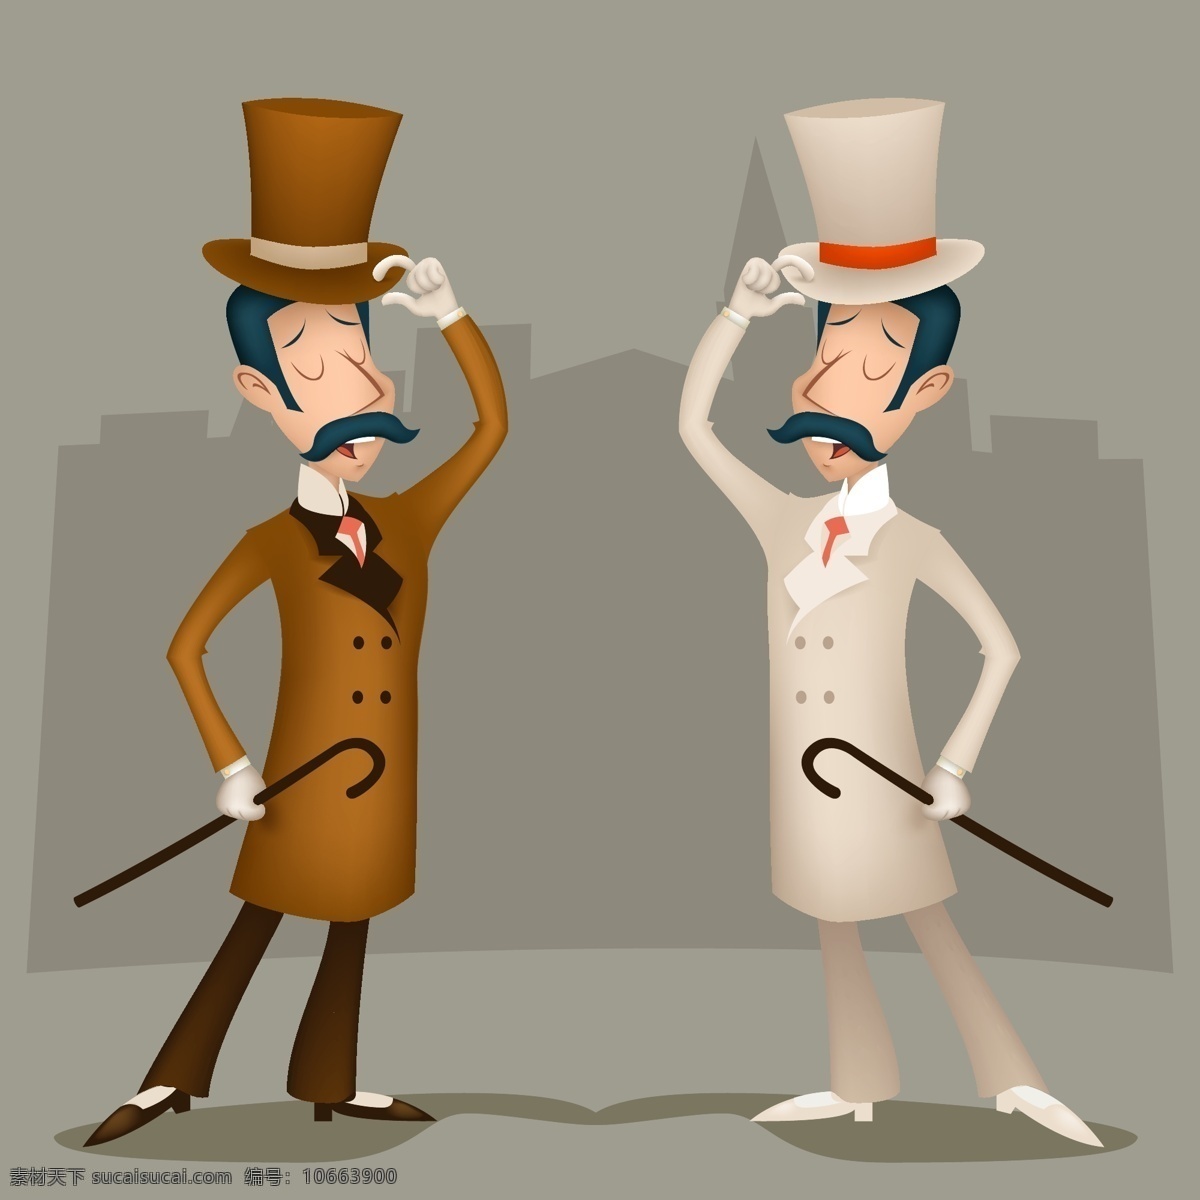 绅士人物 卡通人物 英伦风格 礼帽 礼服 拐杖 西装 英国元素 英格兰 绅士风度 各类素材